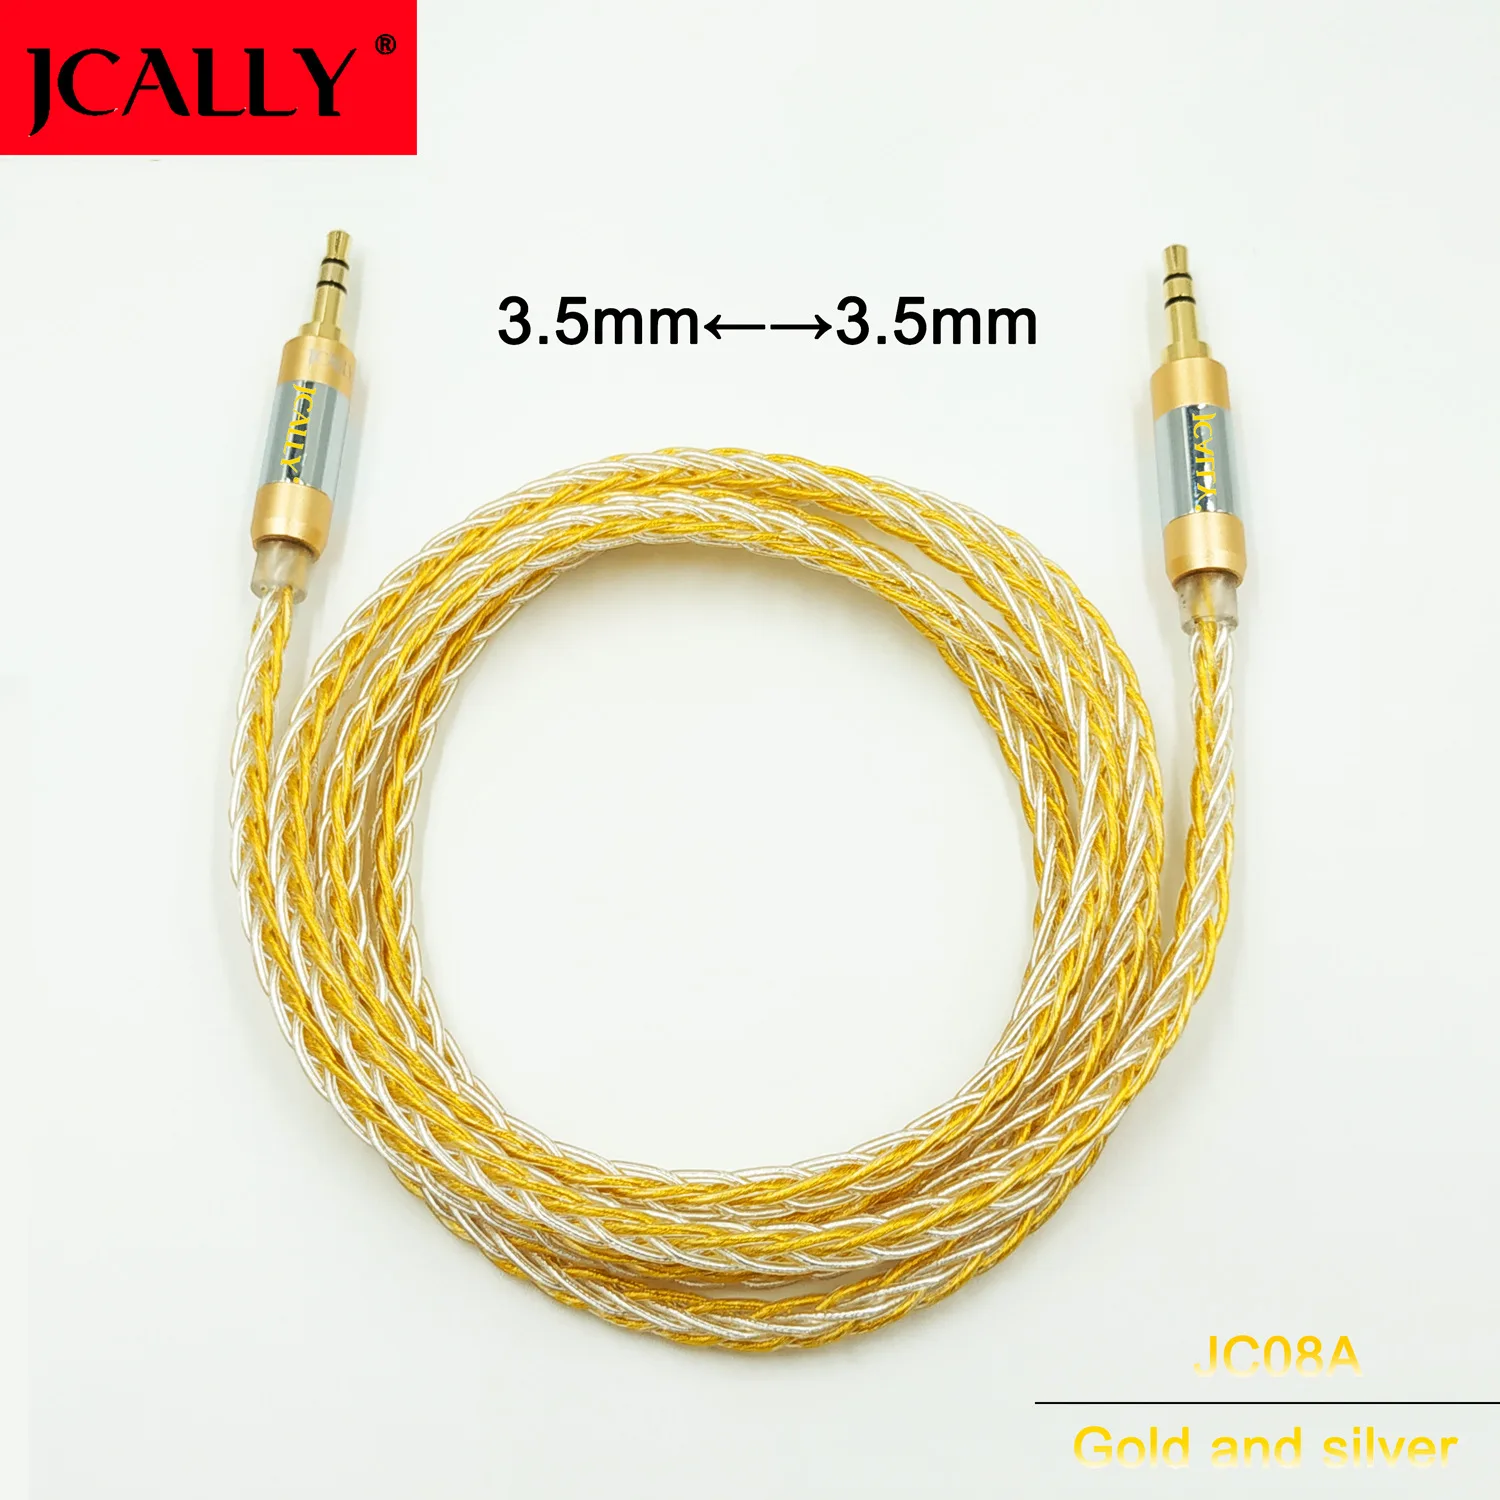 JCALLY JC08A бескислородное медное покрытие 3,5 пар 3,5 пара линия записи обновление линии AUX аудио кабель - Цвет: Gold and silver